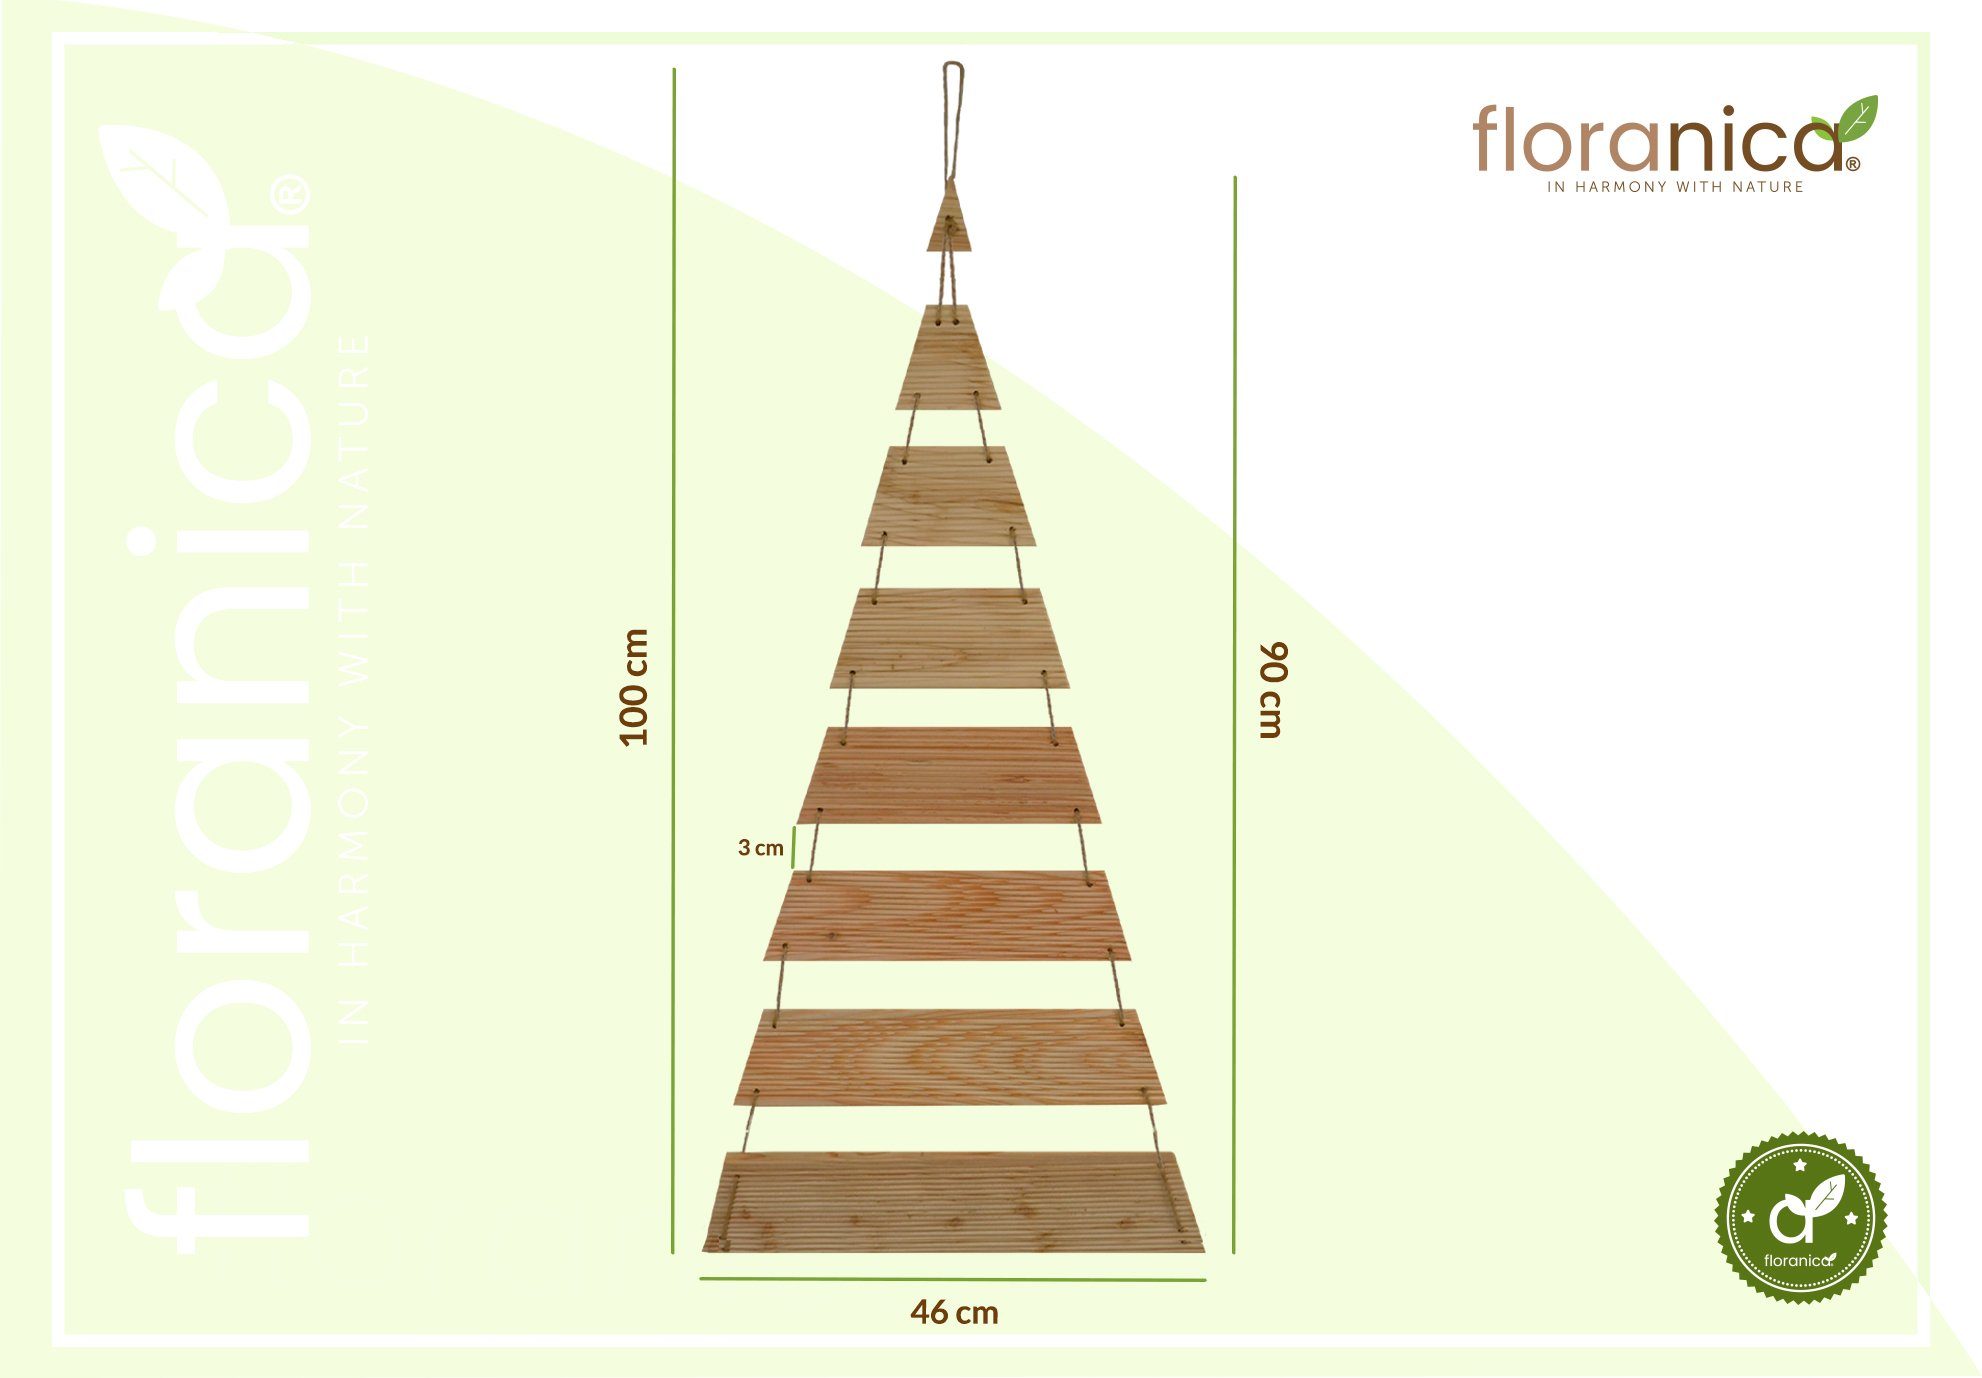 Floranica Hängedekoration, Weihnachtsbaum natürliche 100cm Höhe Breite 46cm Weihnachtsdekoration